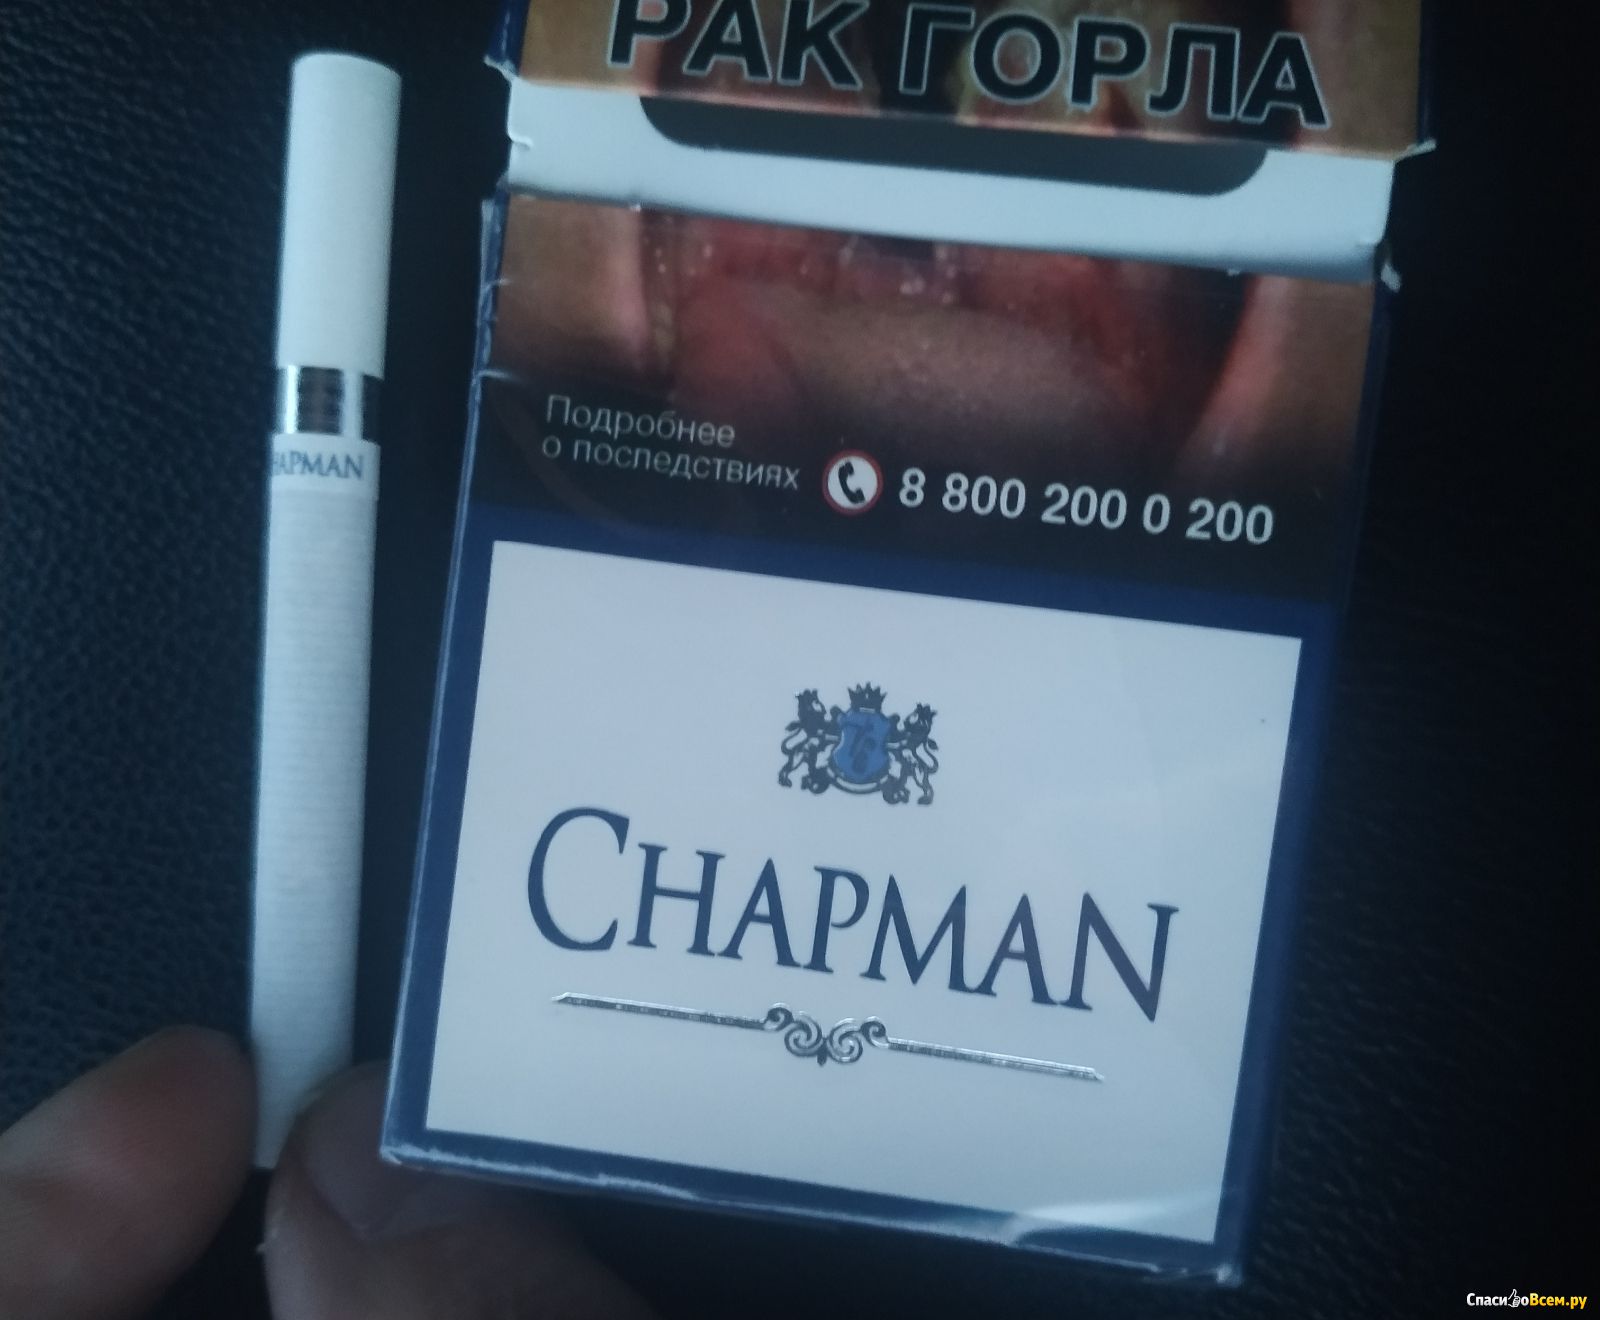 Где Купить Чапман Сигареты В Челябинске Несовершеннолетнему